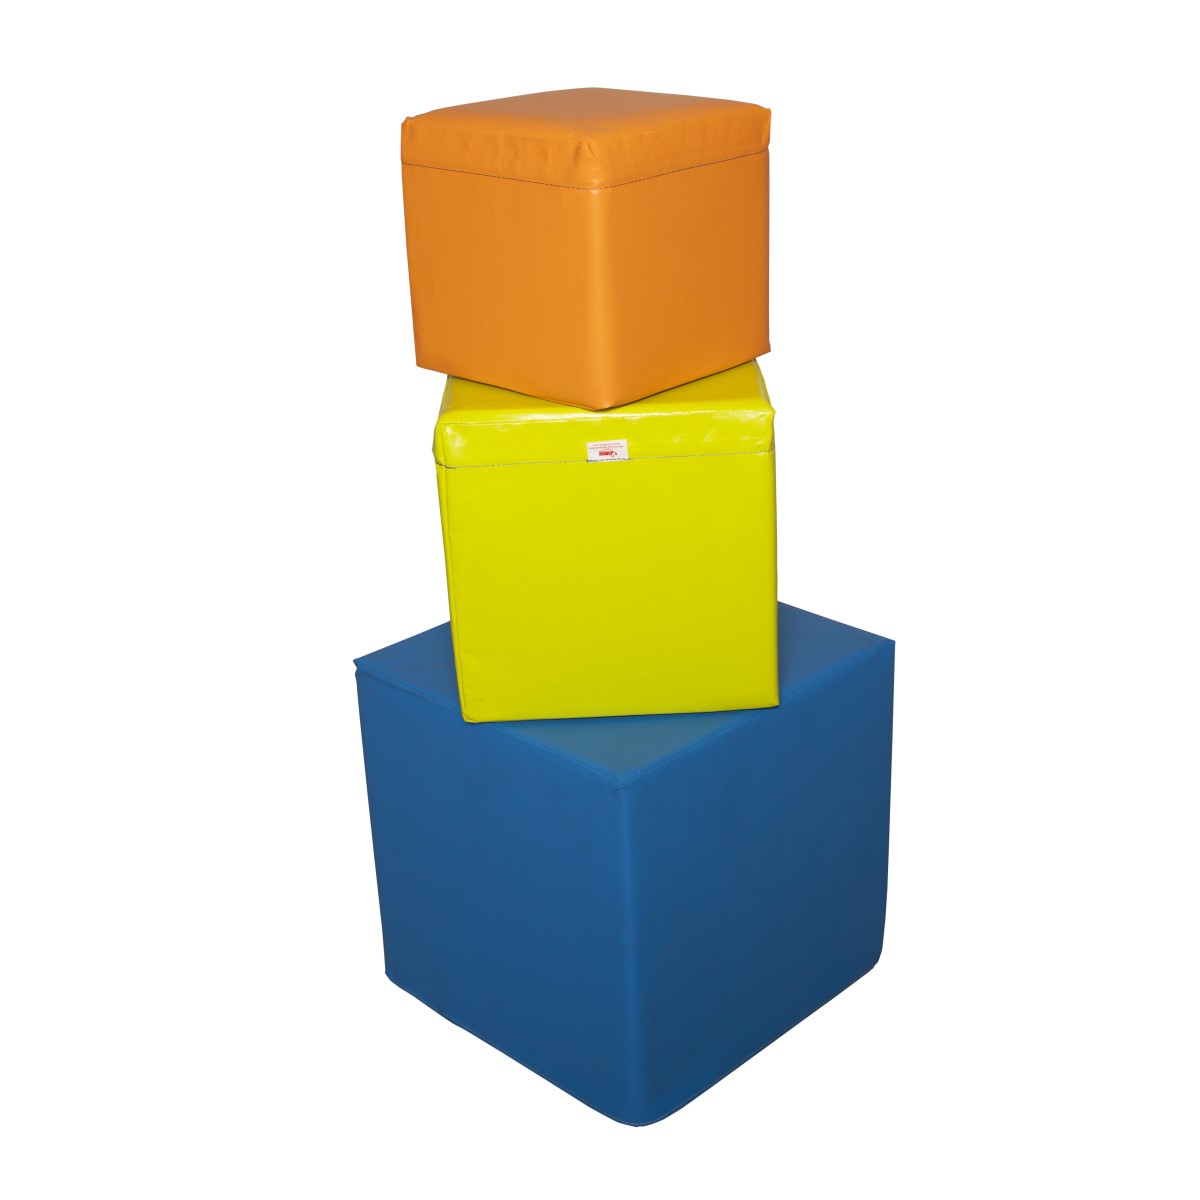 Cube en mousse personnalisable Cube de mousse haute densité 25 kg/m3, idéal pour sauter ou assembler des structures avec d’autre